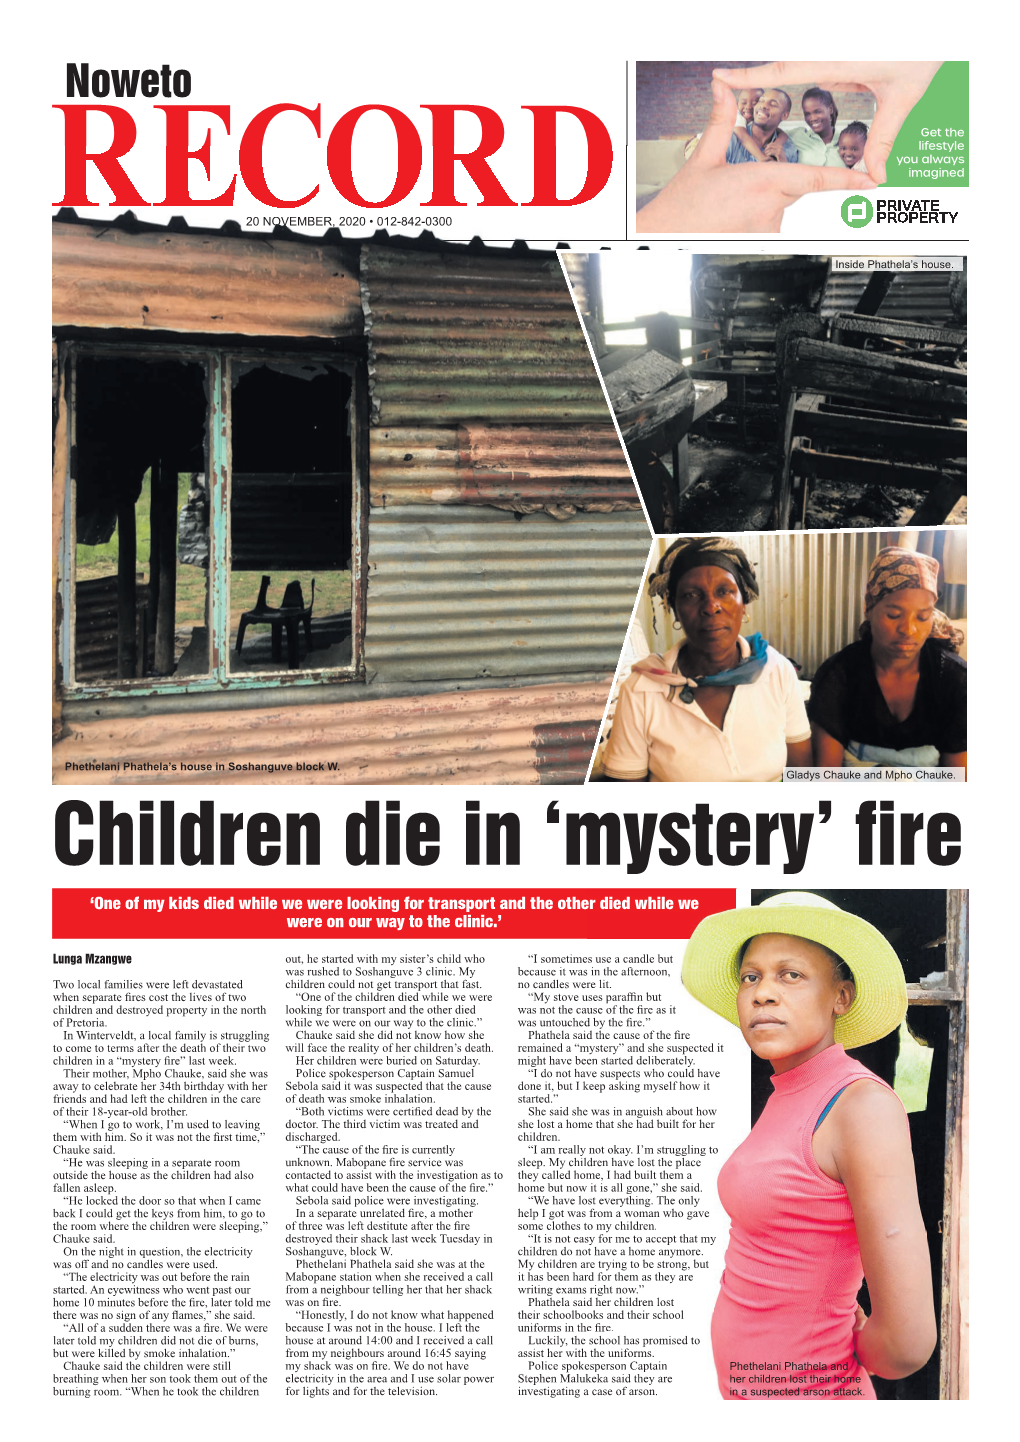 Children Die in 'Mystery' Fire